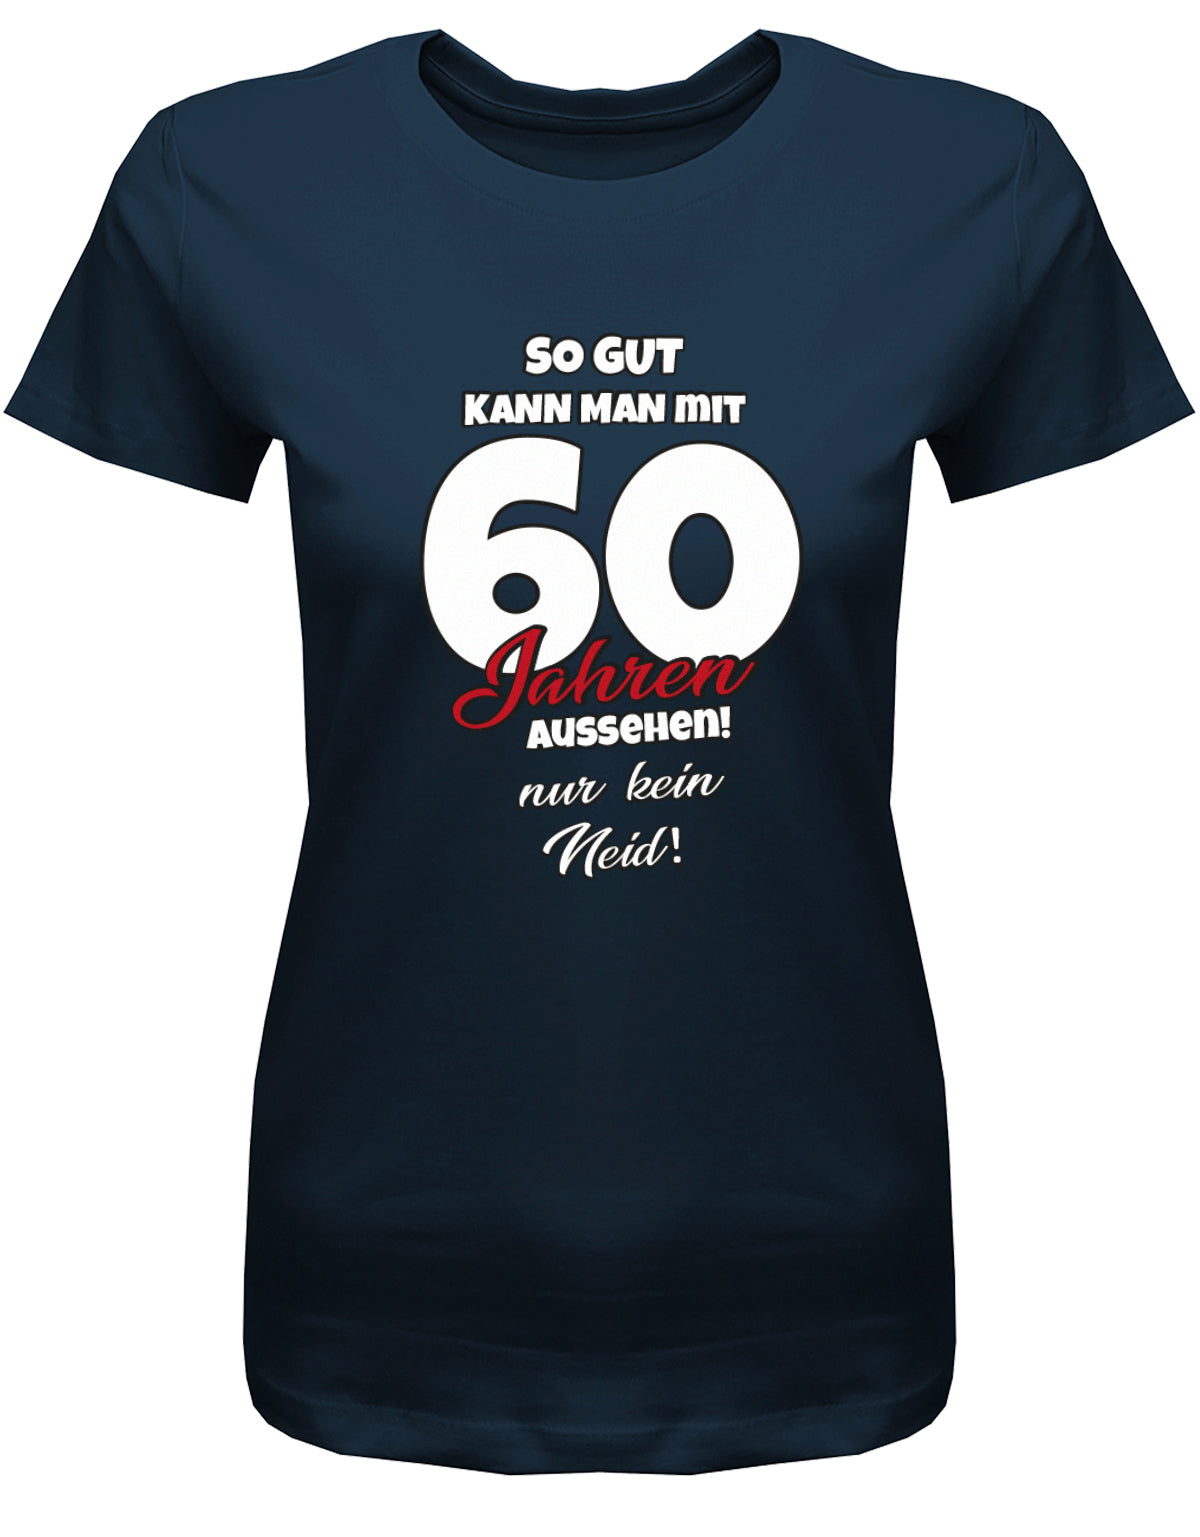 Lustiges T-Shirt zum 60 Geburtstag für die Frau Bedruckt mit So gut kann man mit 60 Jahren aussehen! Nur kein Neid! Navy